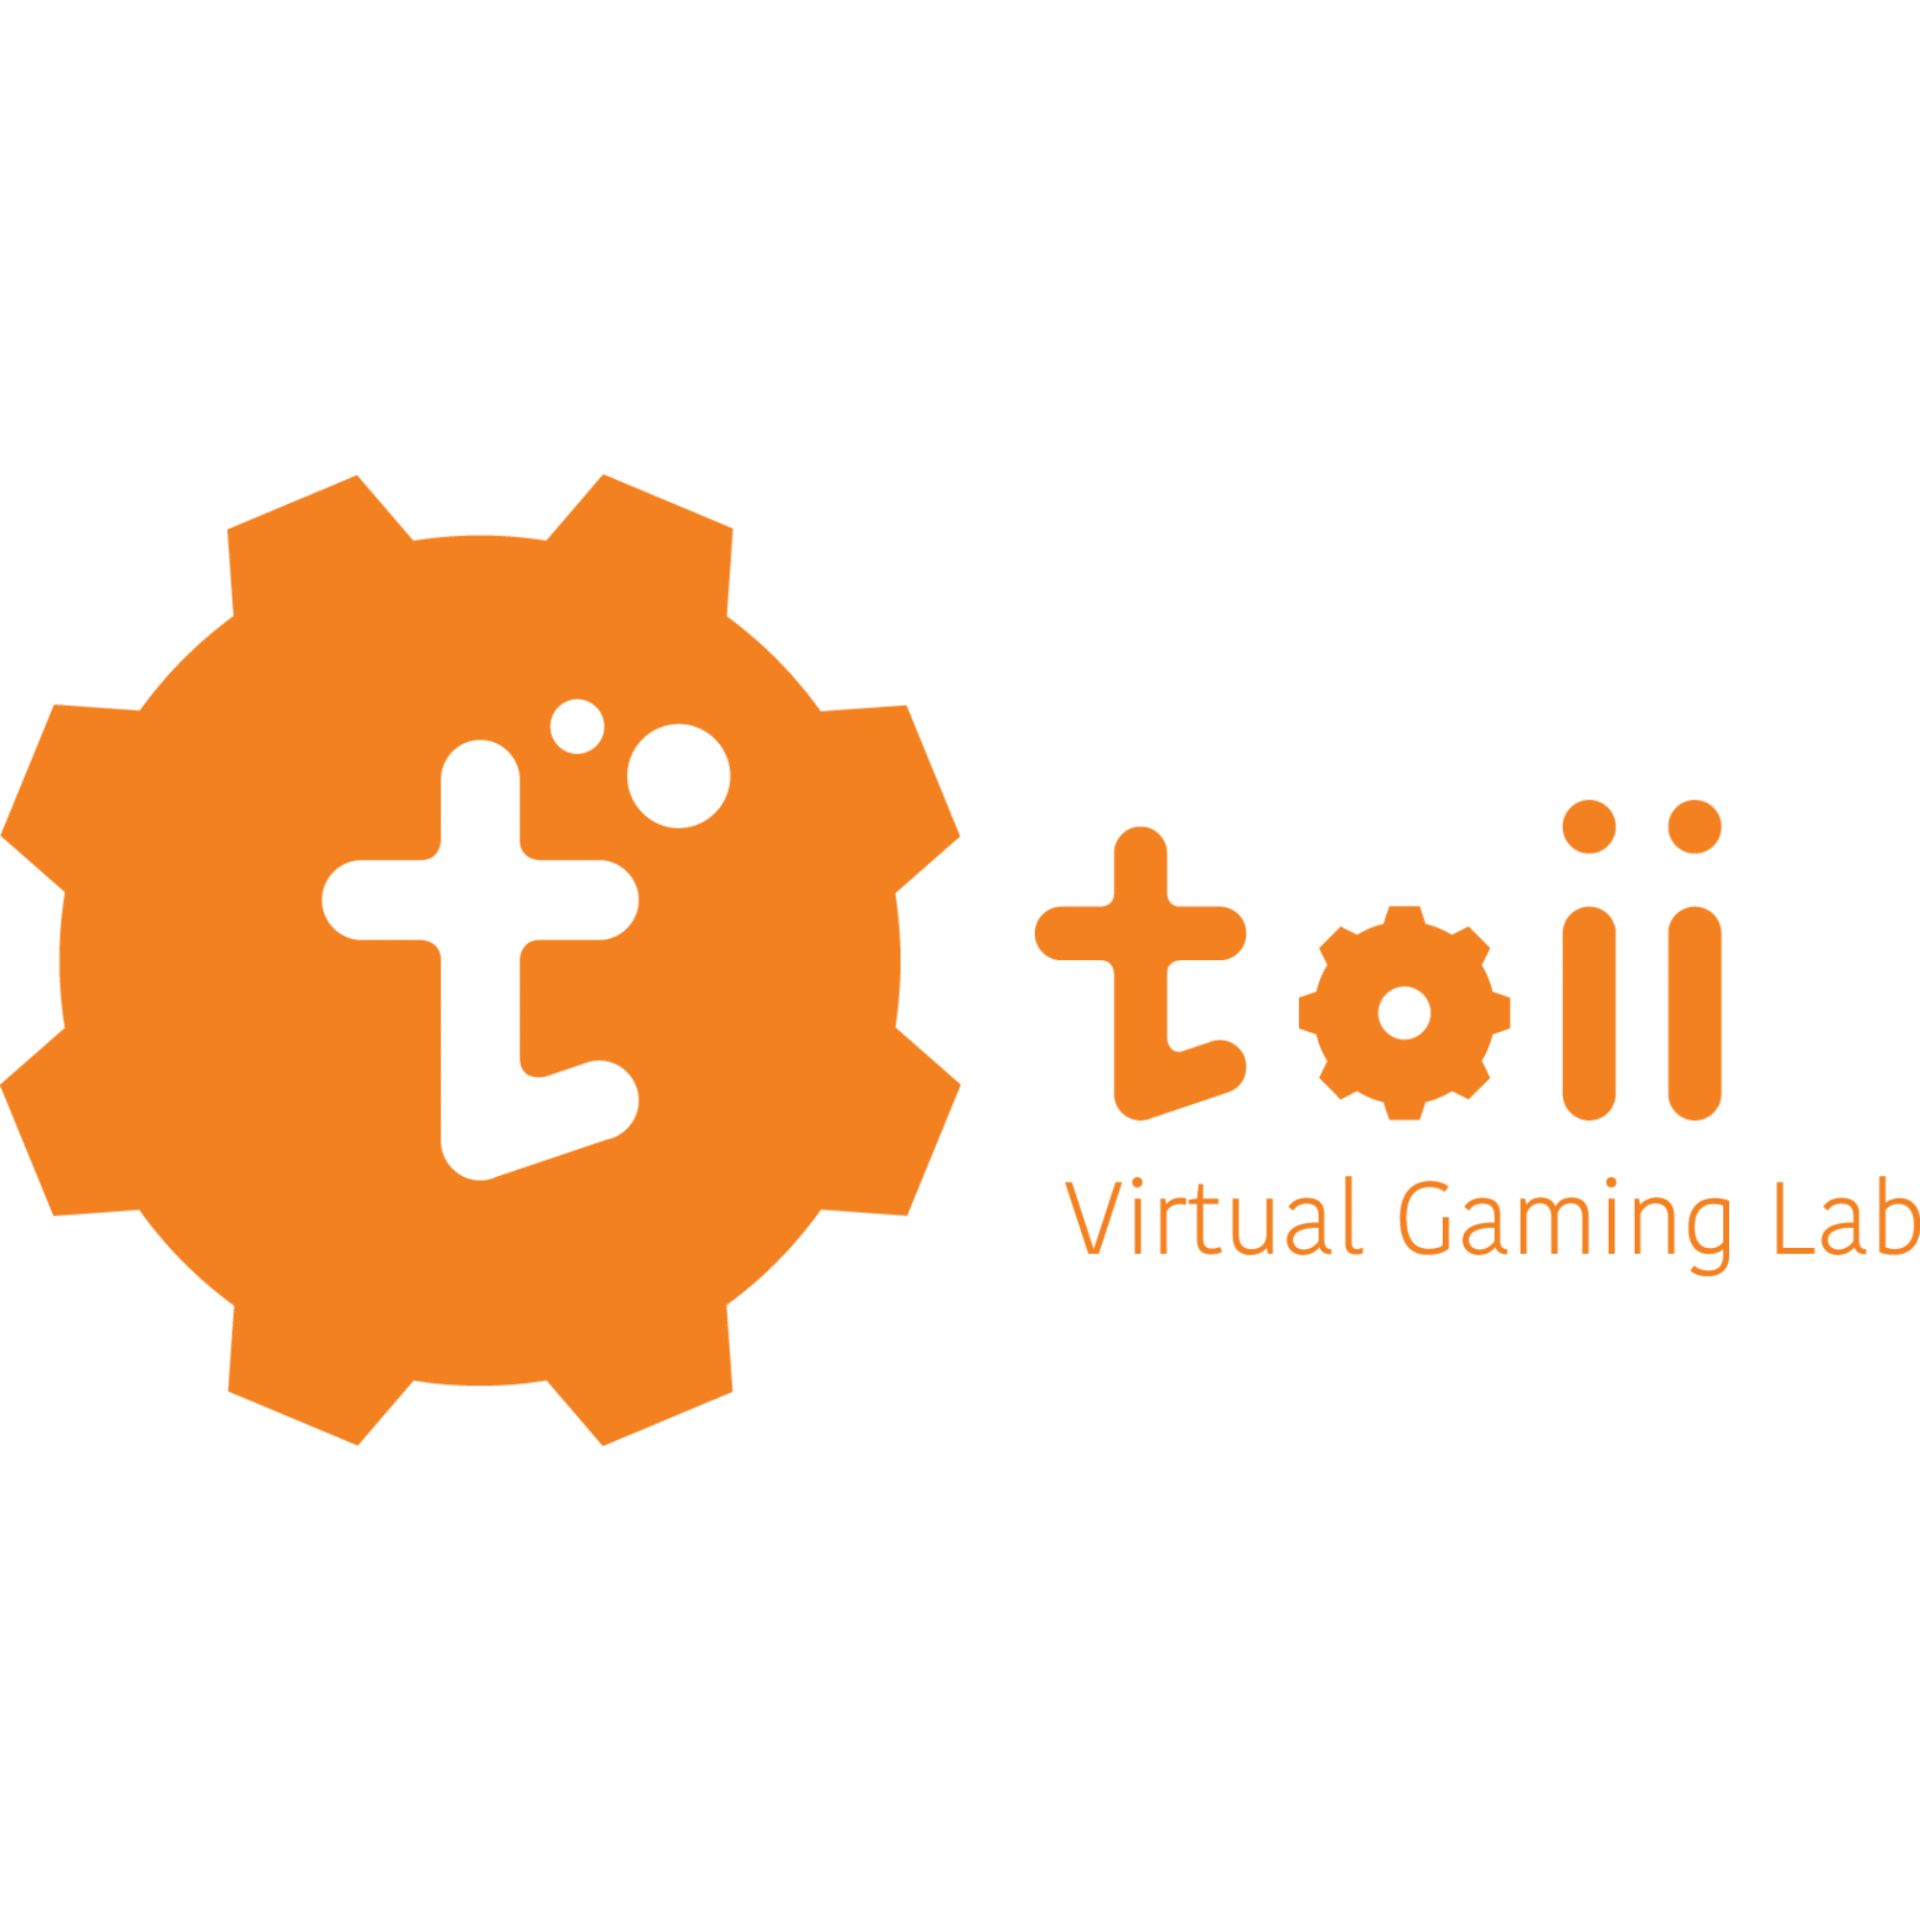 Toii (Virtual Gaming Lab)